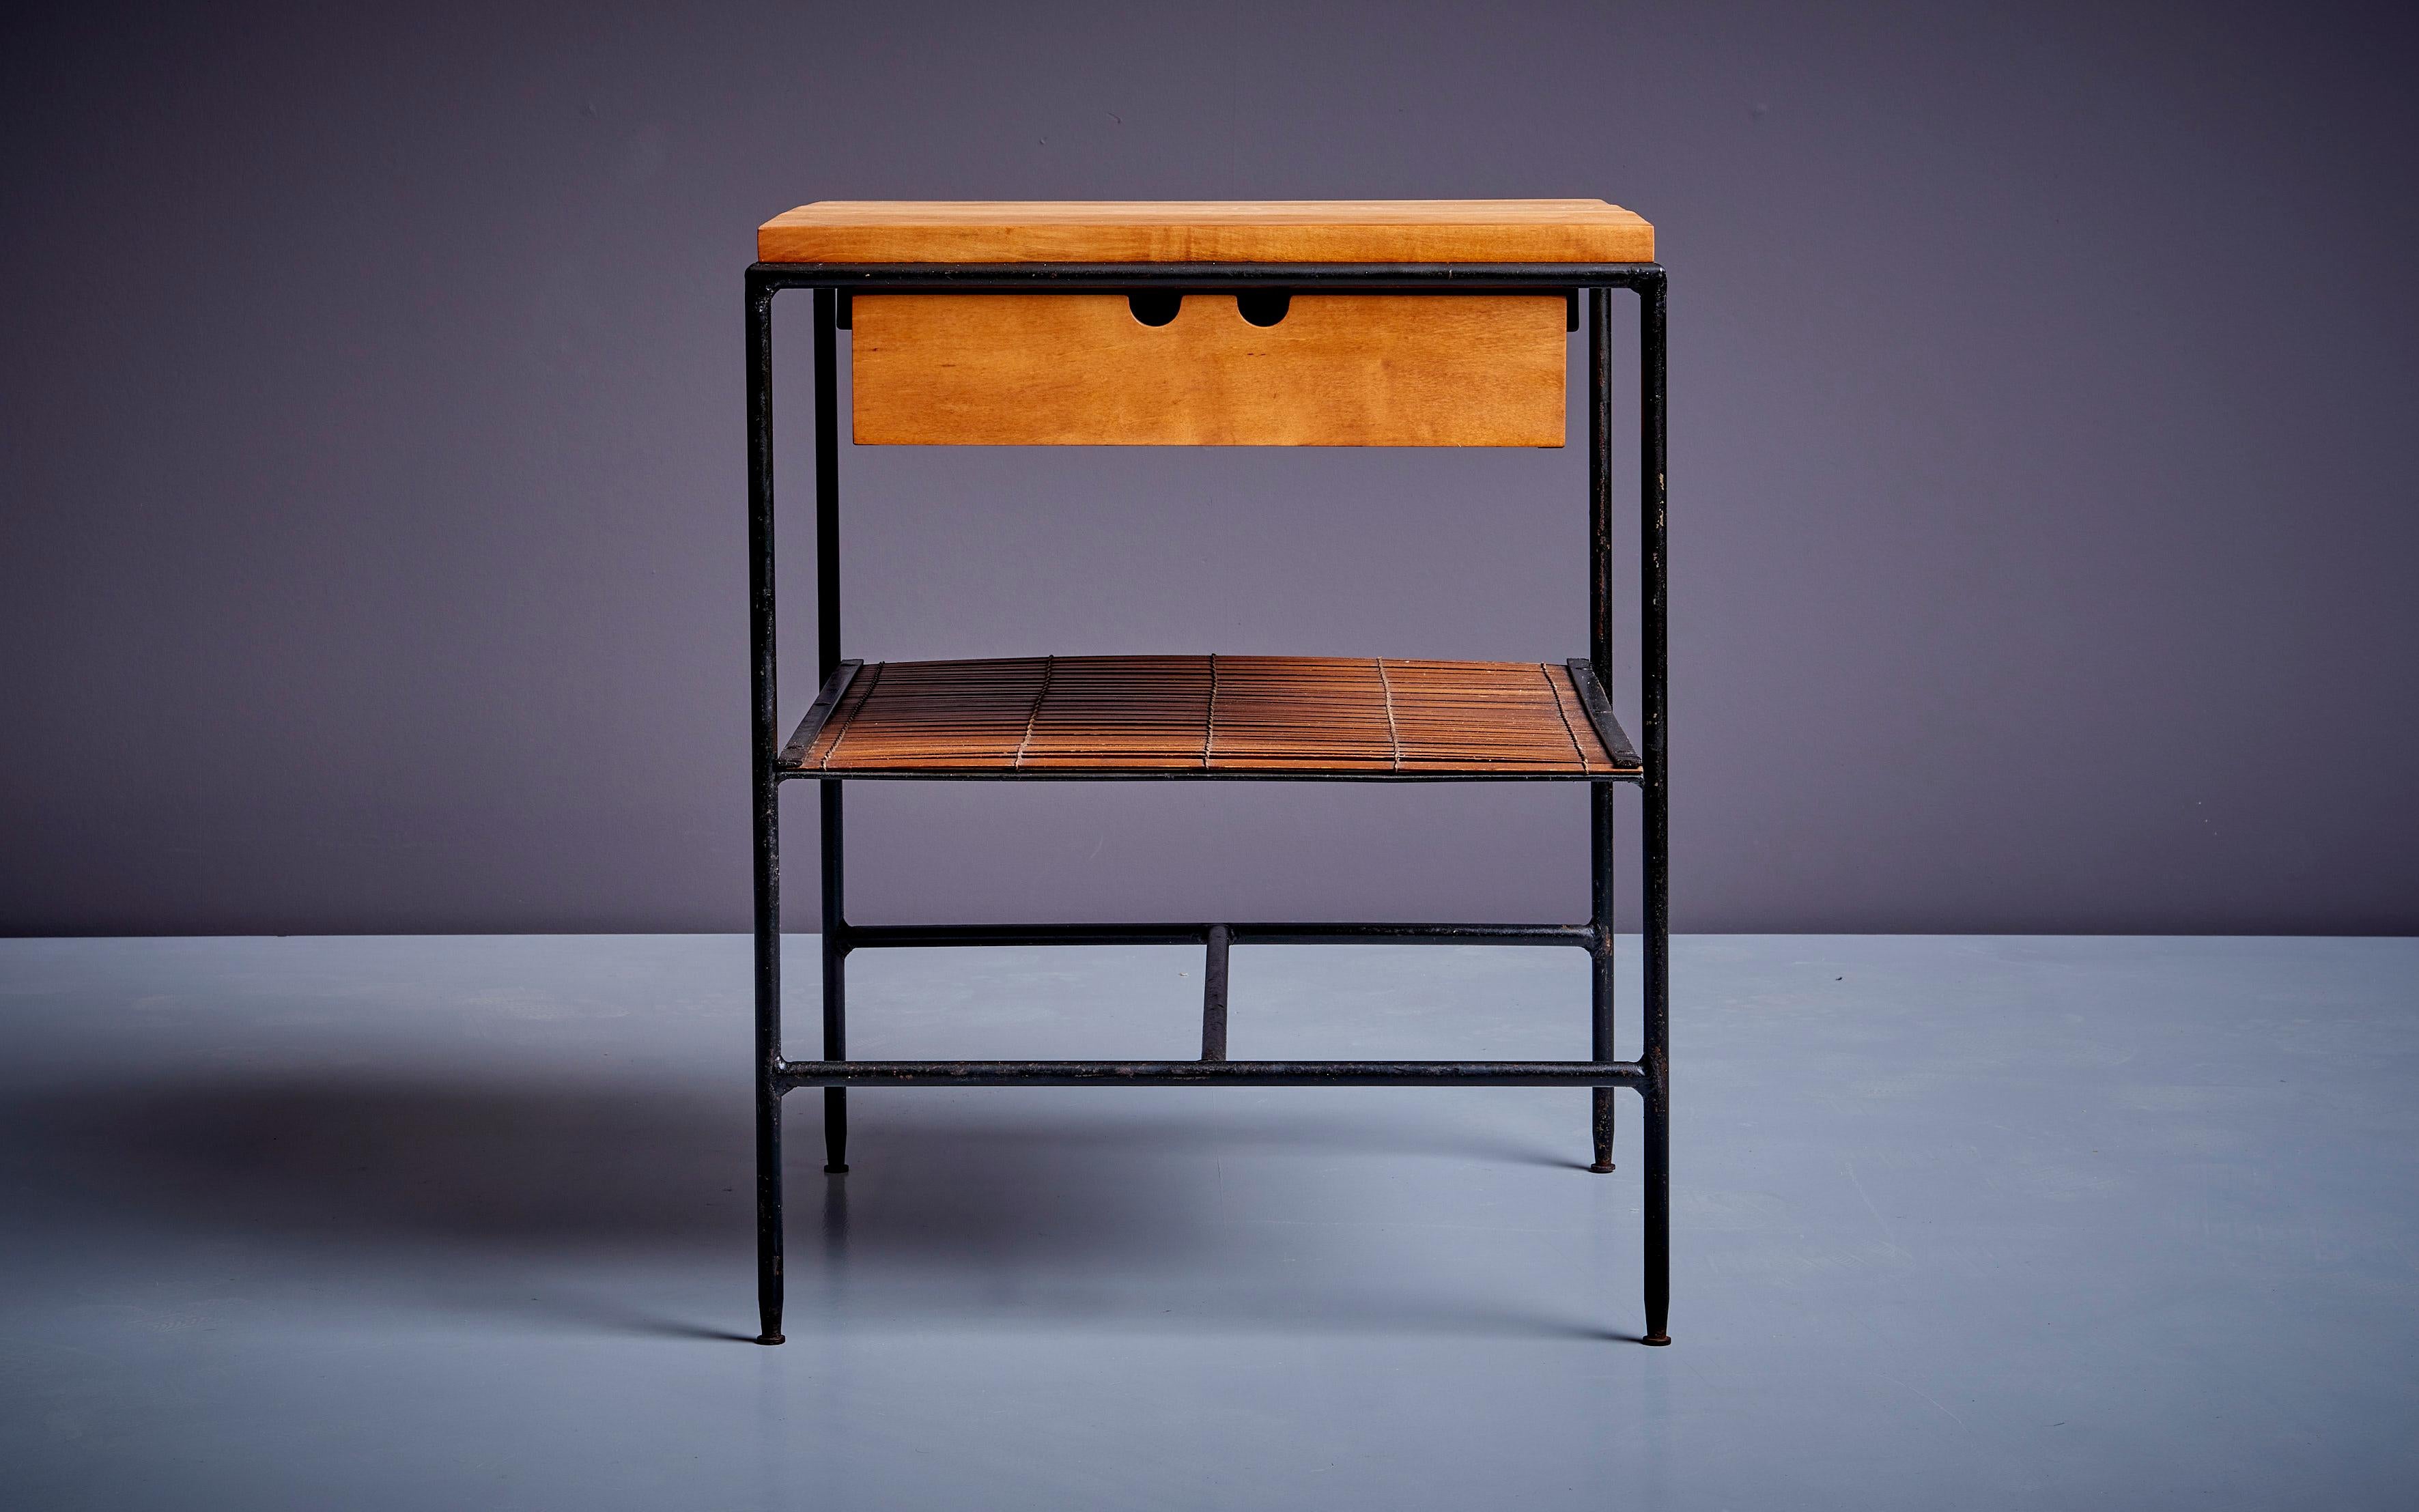 Très désirable table de nuit ou table d'appoint Paul McCobb #1572 de sa collection Planner Group pour Winchendon, vers les années 1950. Elle se compose d'un cadre en fer forgé noir apparent, d'un seul tiroir et d'un plateau en érable, et d'une